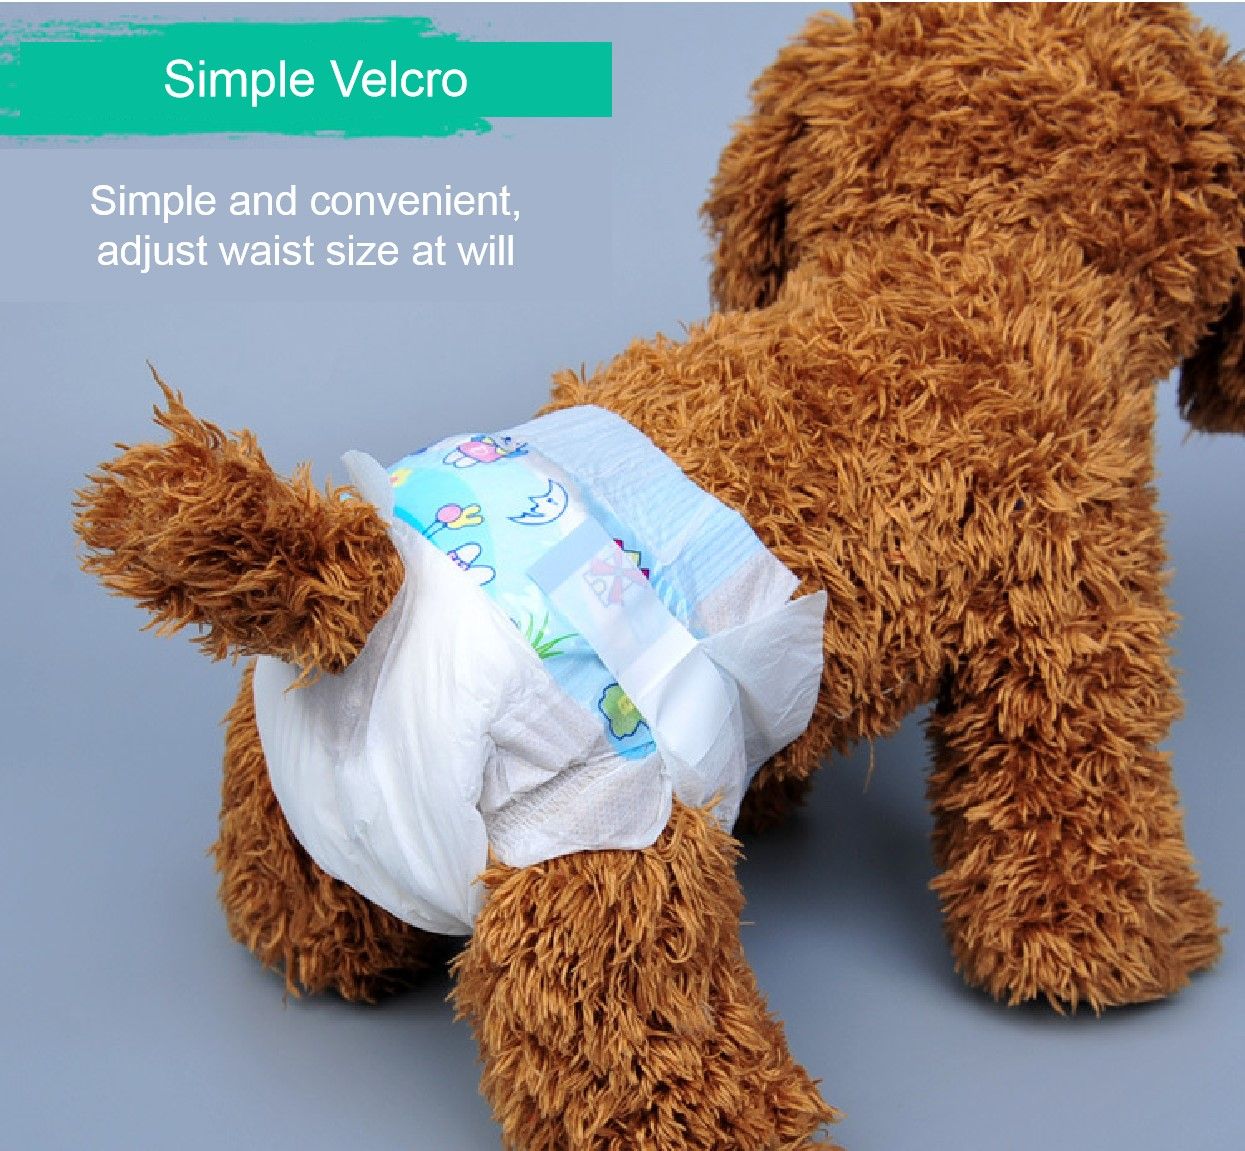 Lo Nuevo Pantalones De Para Mascotas Pañales Para Perros Piezas Perro Del Paquete Pañales Mujer Menstruales Para Mascotas Pantalones Fisiológicos De € | DHgate